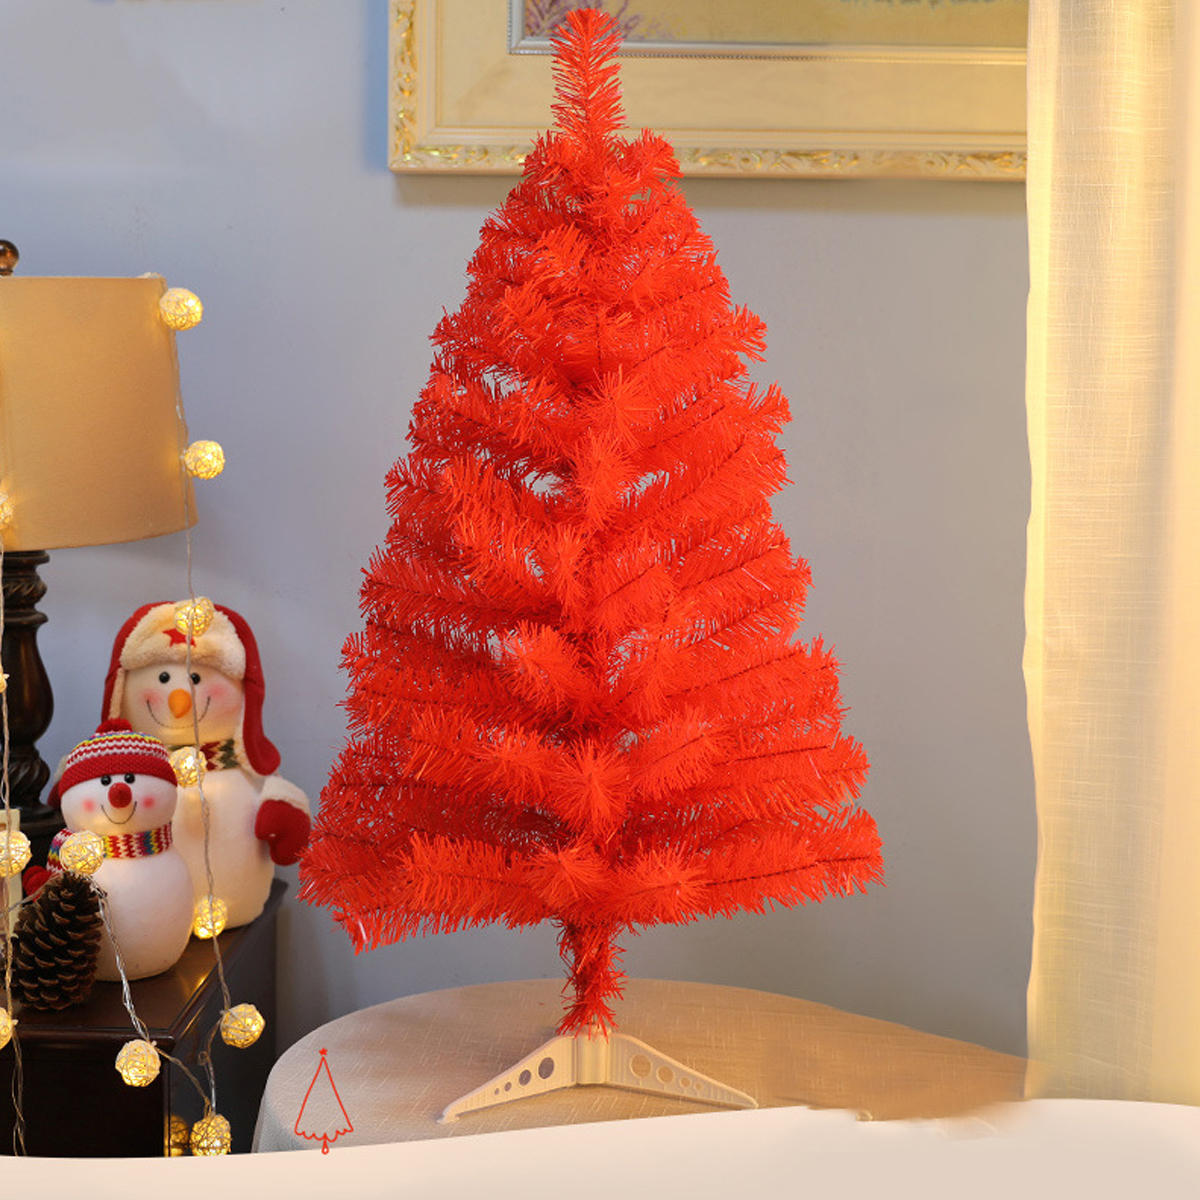 Kerstboom 3FT Xmas Decor voor kinderen / peuter spelen decoraties Home